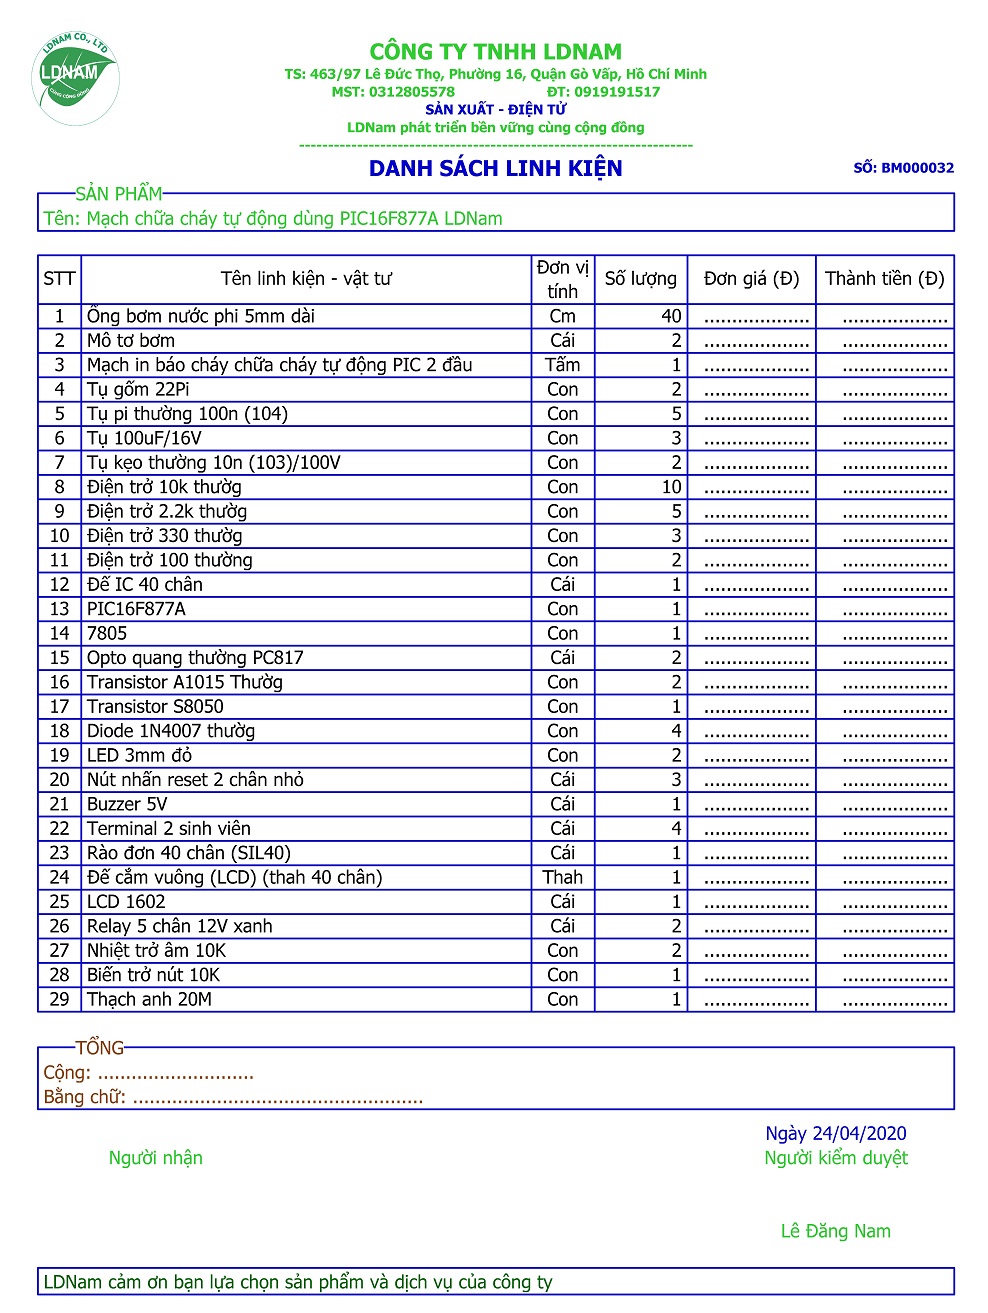 Danh sách linh kiện mạch chữa cháy tự động dùng PIC16F877A LDNam